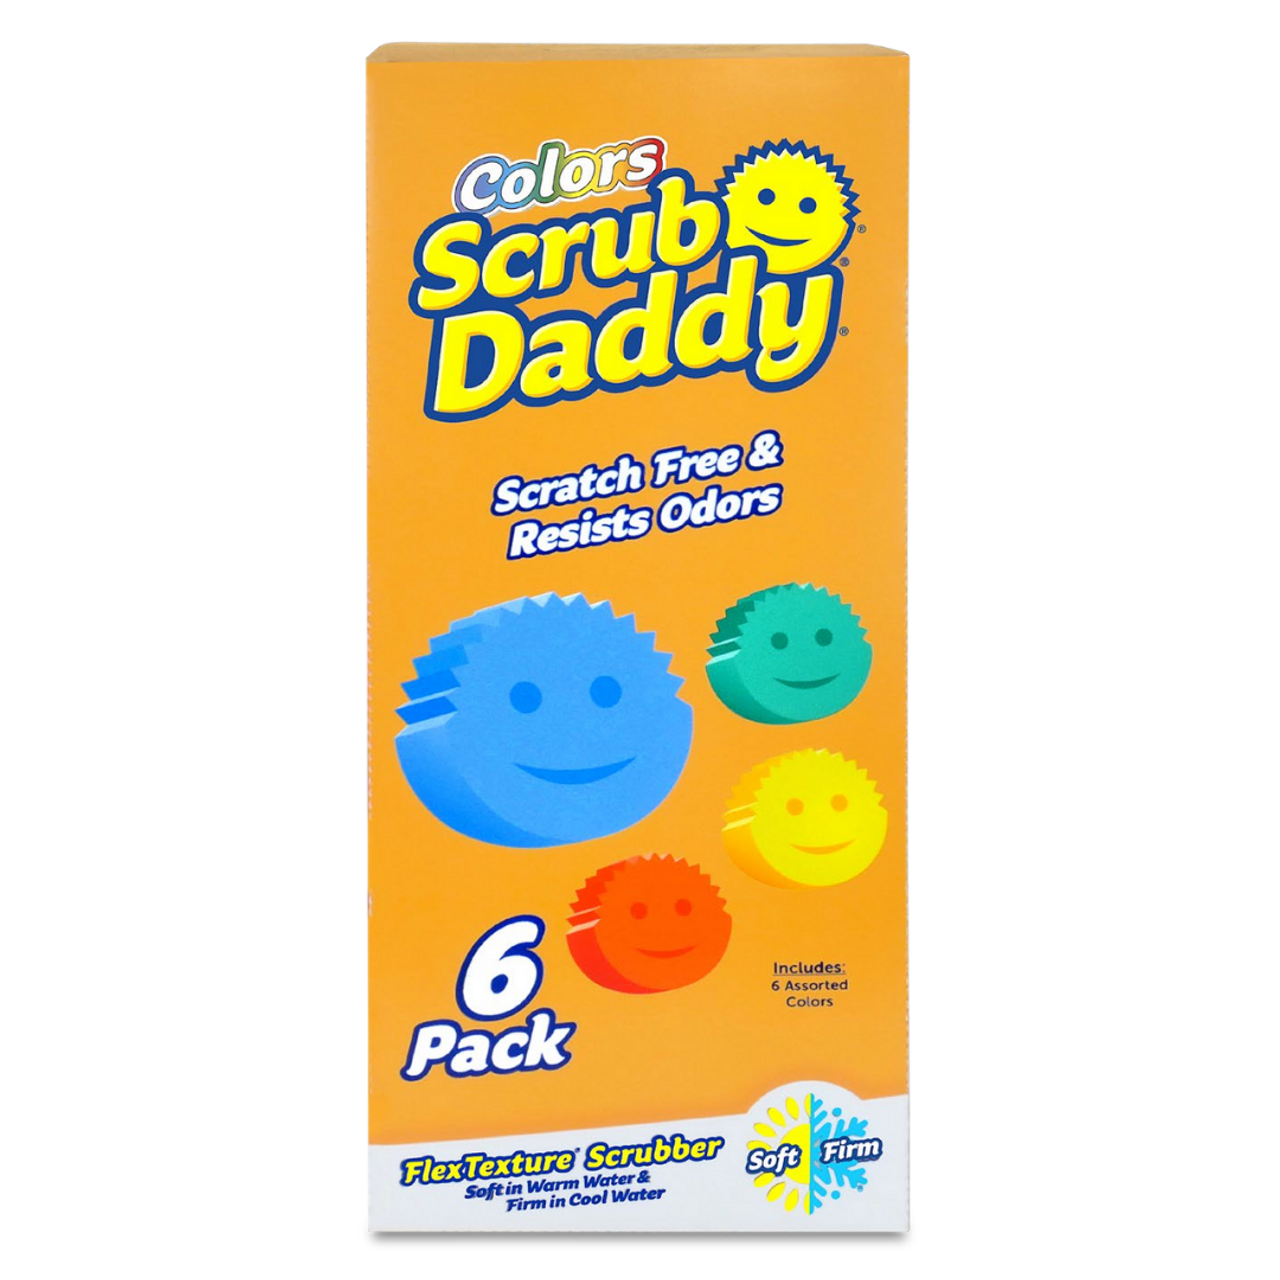 Dish Daddy Complete Bundle – Scrub Daddy